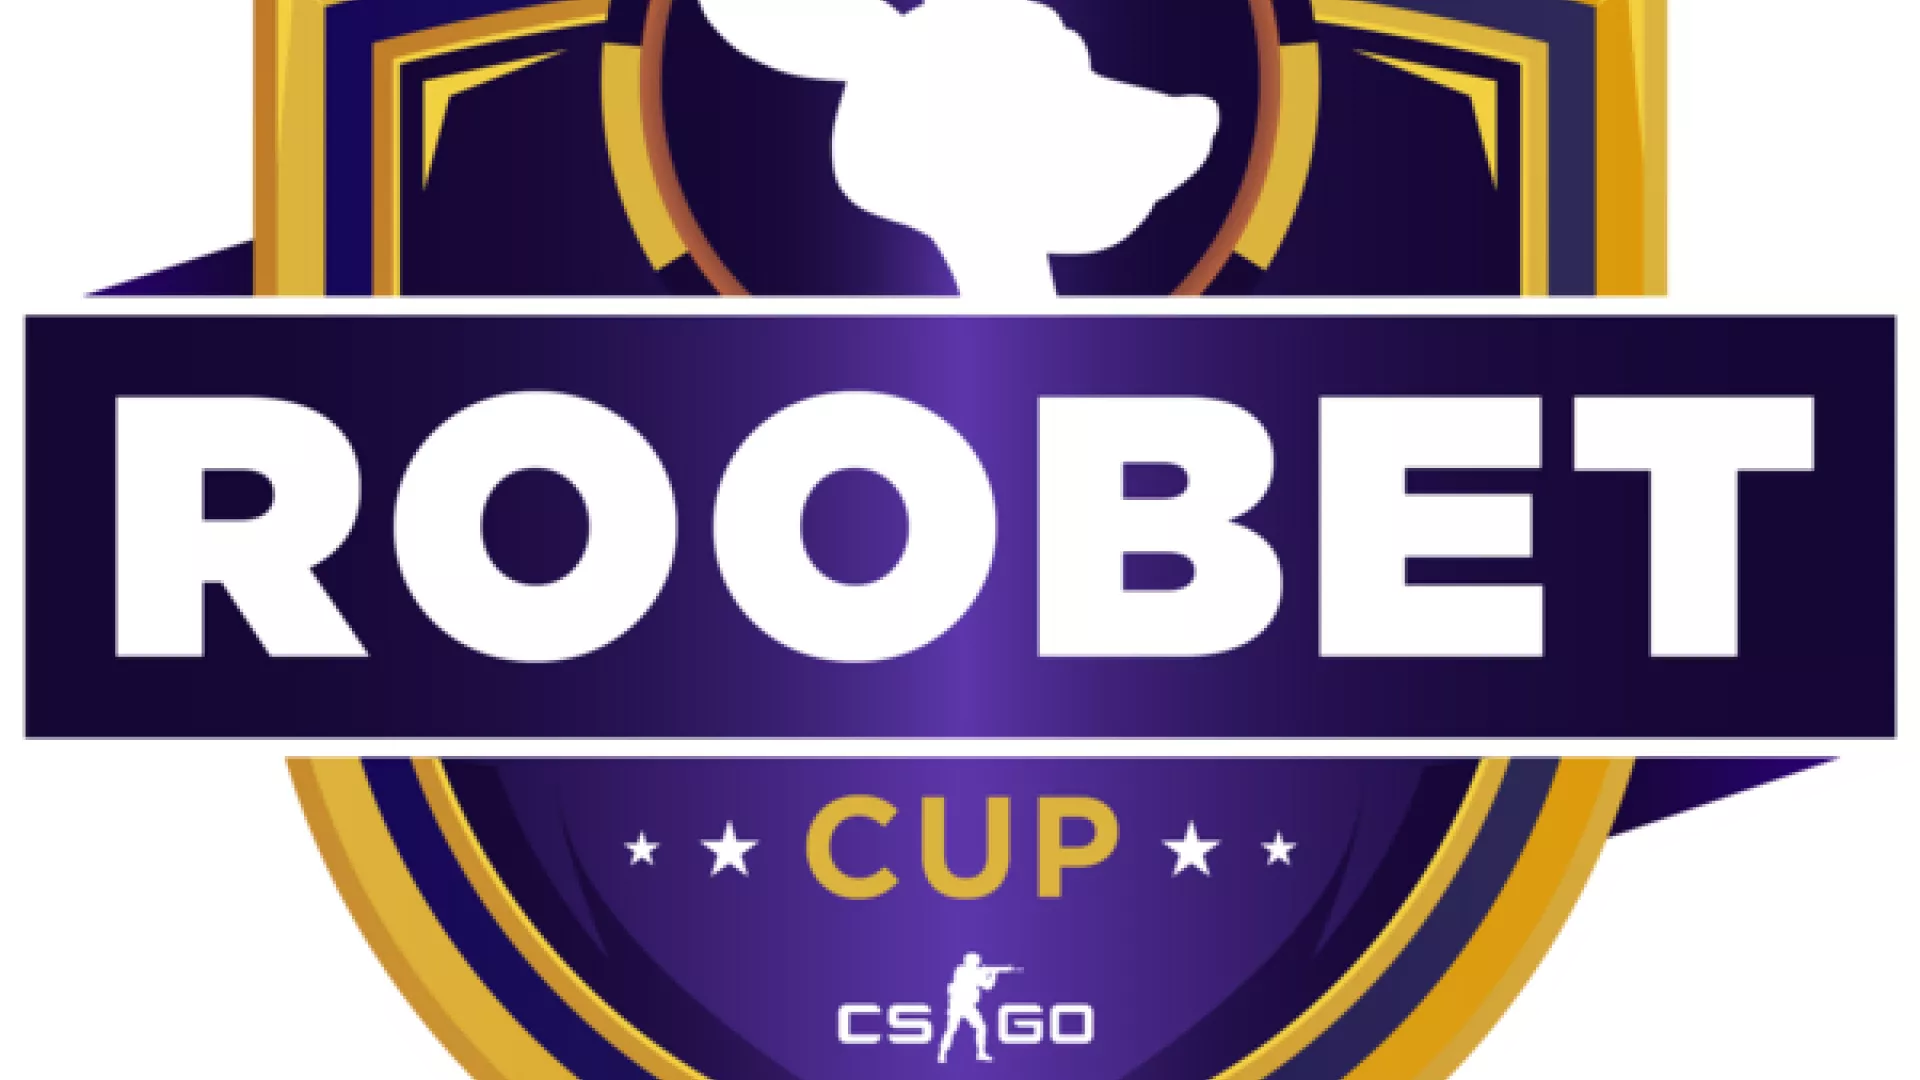 Roobet Cup 2022